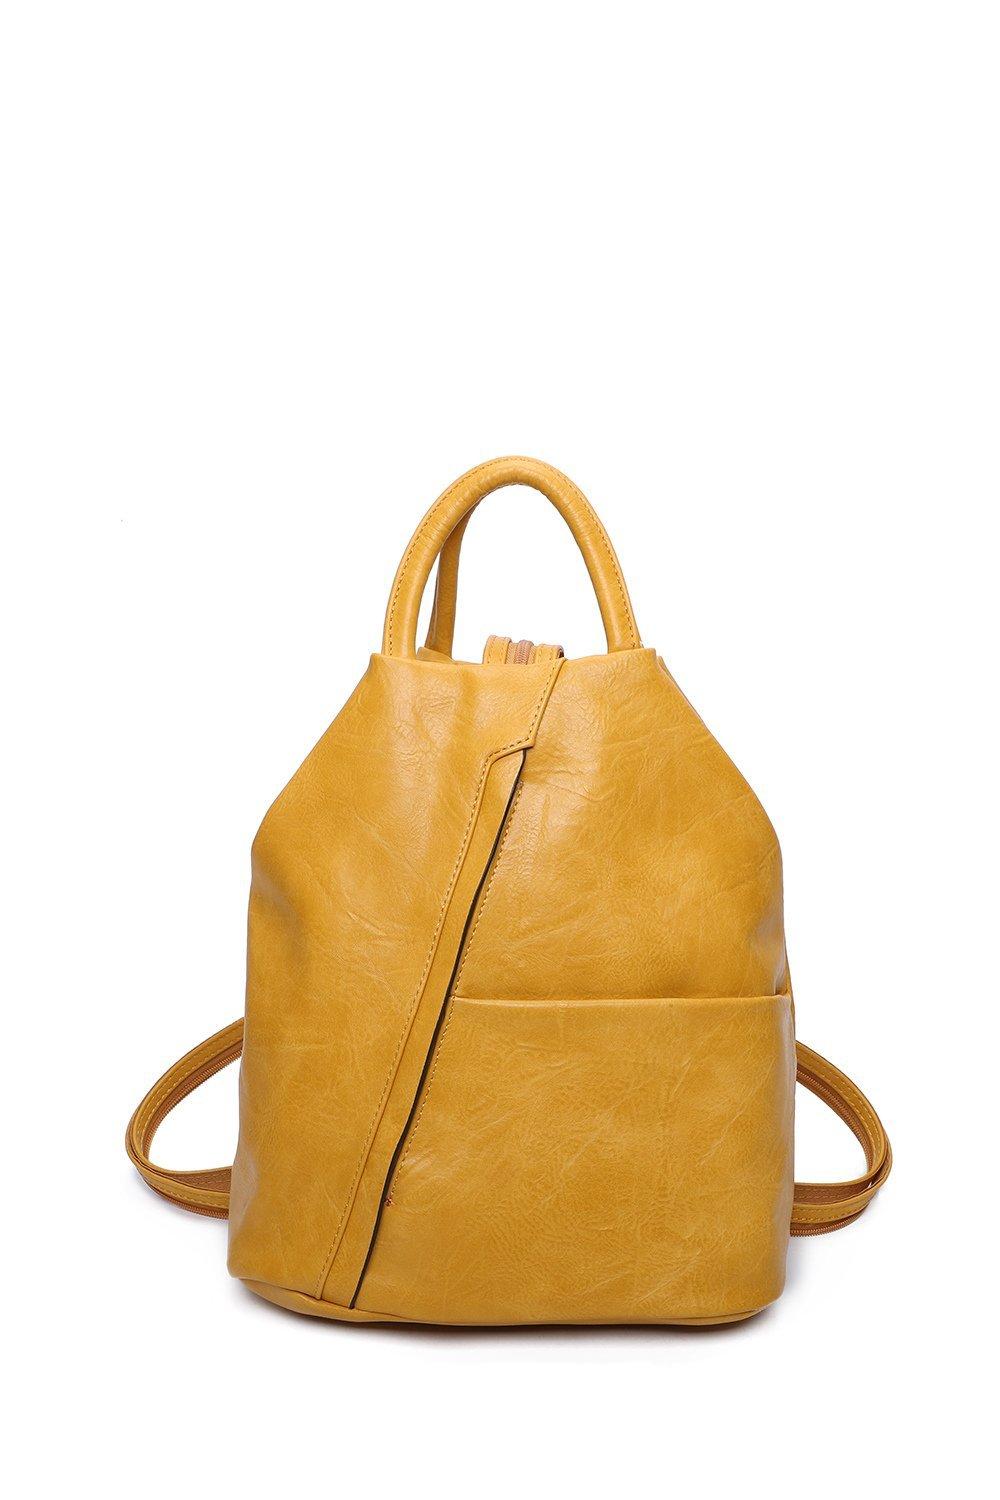 Рюкзак-трансформер Shira из искусственной кожи Fontanella Fashion, желтый